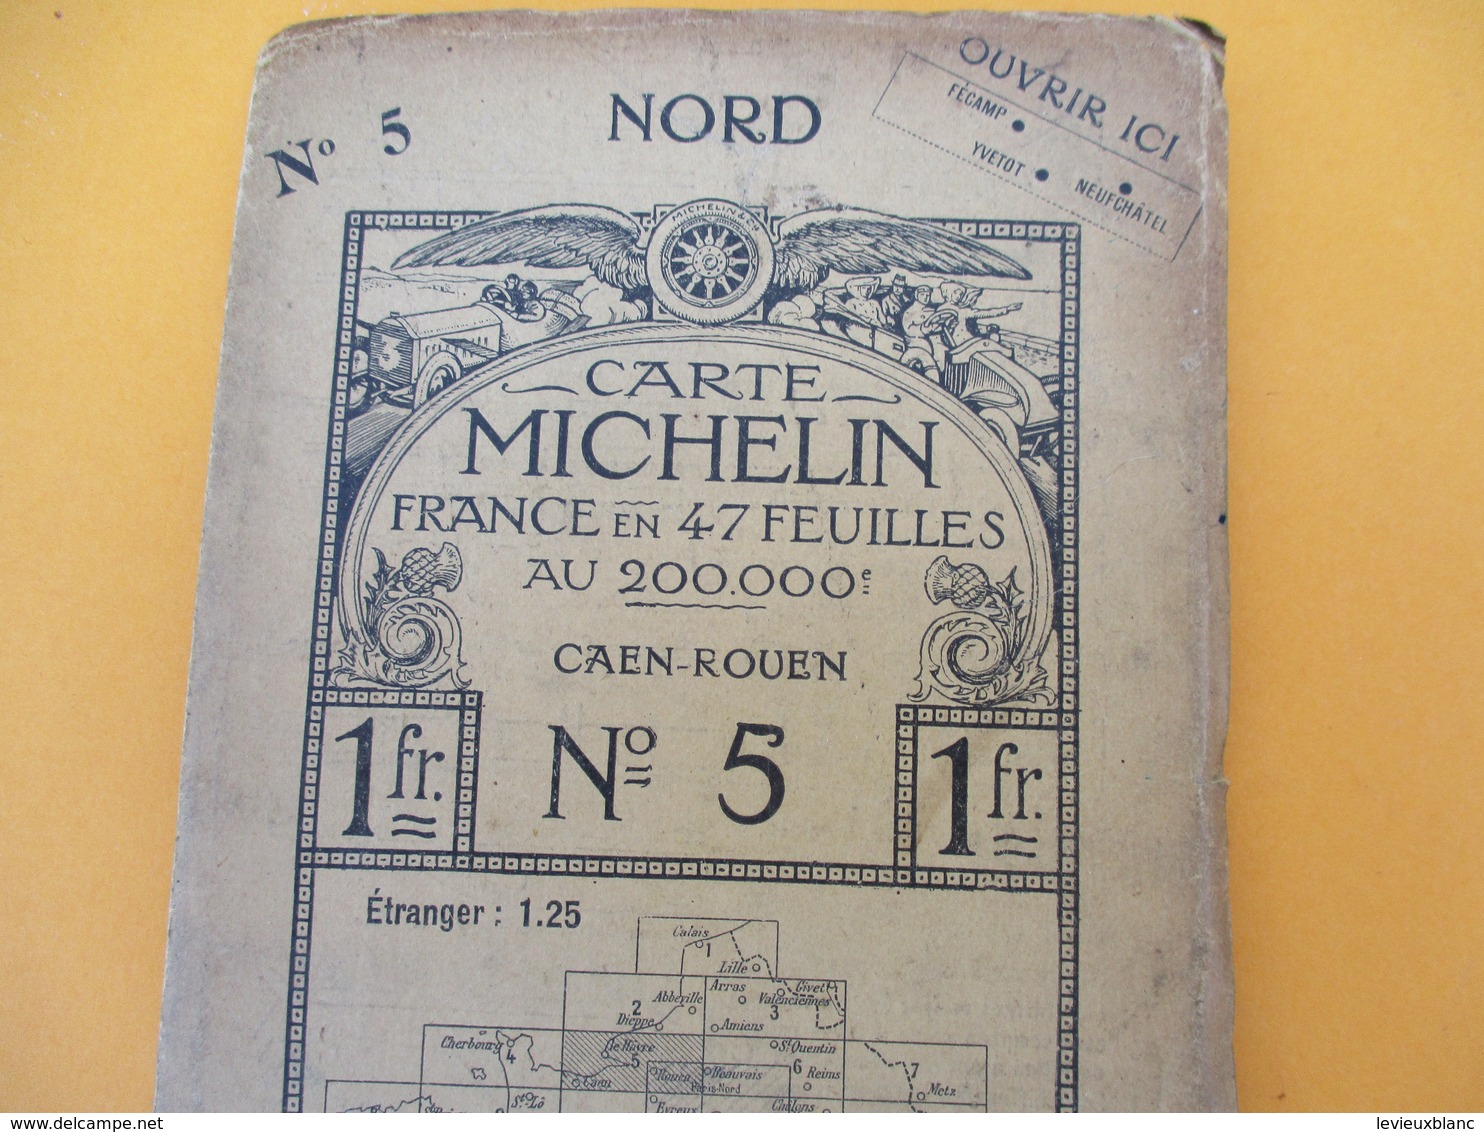 Carte MICHELIN /N° 5 CAEN-ROUEN/ Ch Delagrave/ Paris/ Automobiles Renault Et Delaunay Belleville/ Vers 1905  PGC186 - Cartes Routières